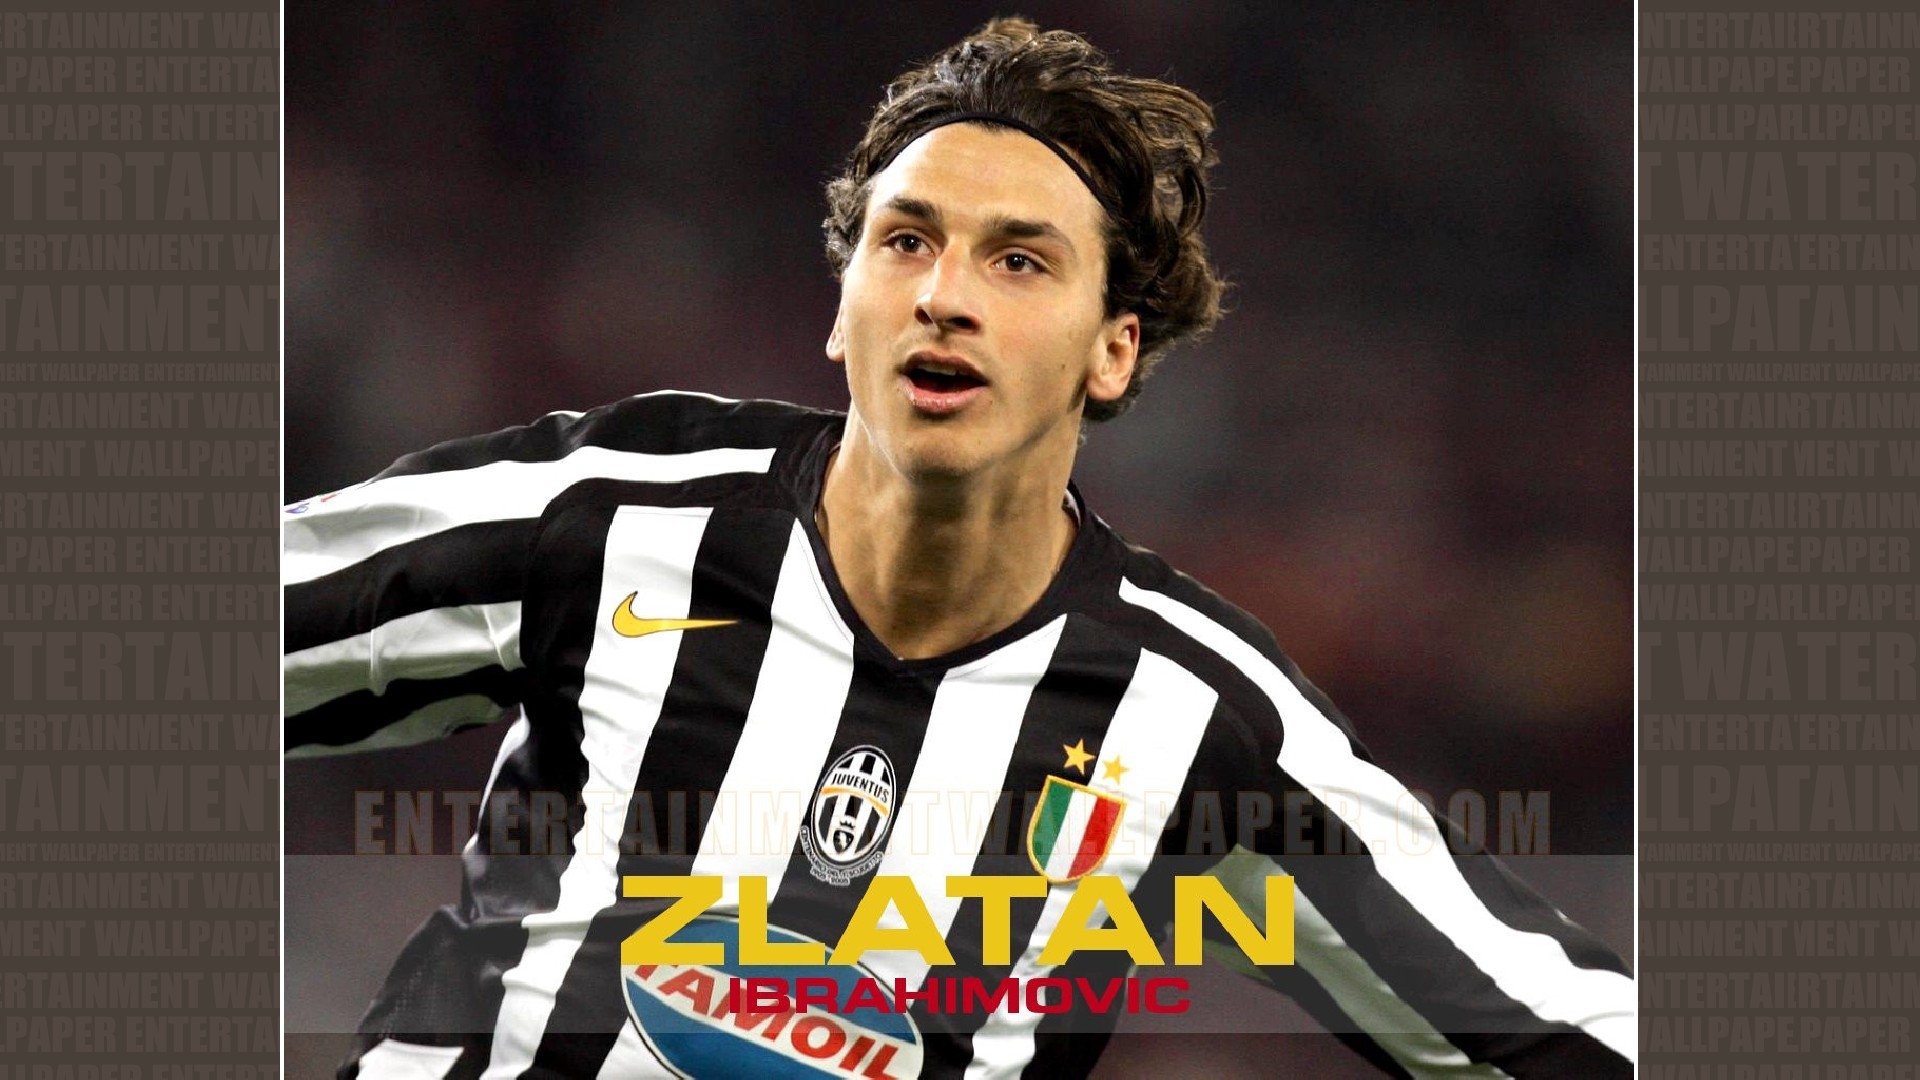 Zlatan Ibrahimovic Wallpaper Download - Zlatan Ibrahimovic Juventus - HD Wallpaper 